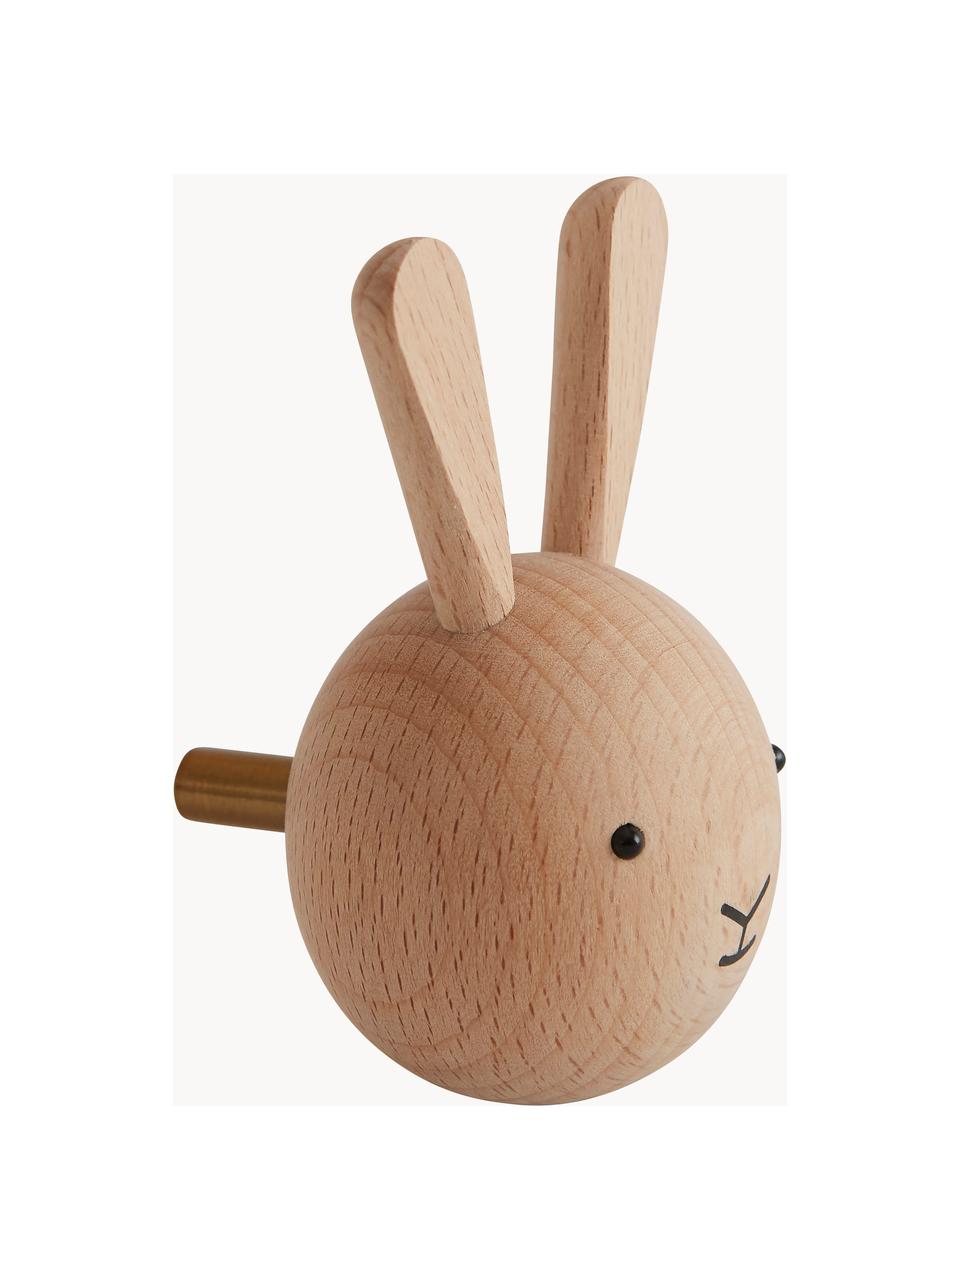 Nástěnný háček z bukového dřeva Rabbit, Bukové dřevo, Bukové dřevo, Š 5 cm, V 8 cm